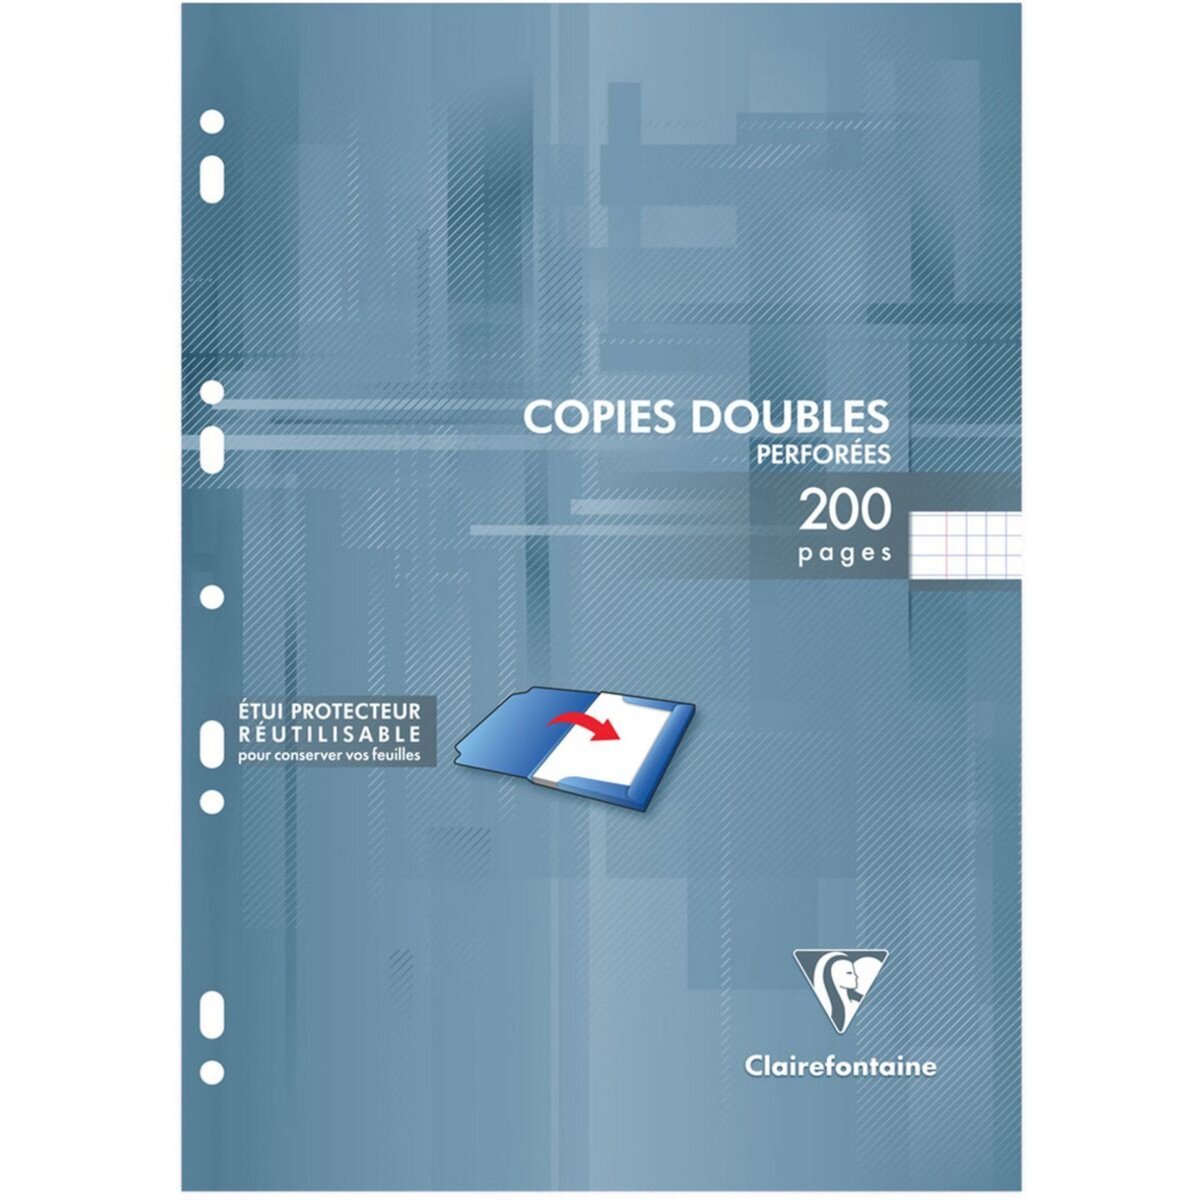 Copies doubles A4 21 x 29.7 cm - 200 pages petits carreaux non perforées -  Clairefontaine - 90 g/m² - Blanc - Copies doubles - Copies - Feuilles